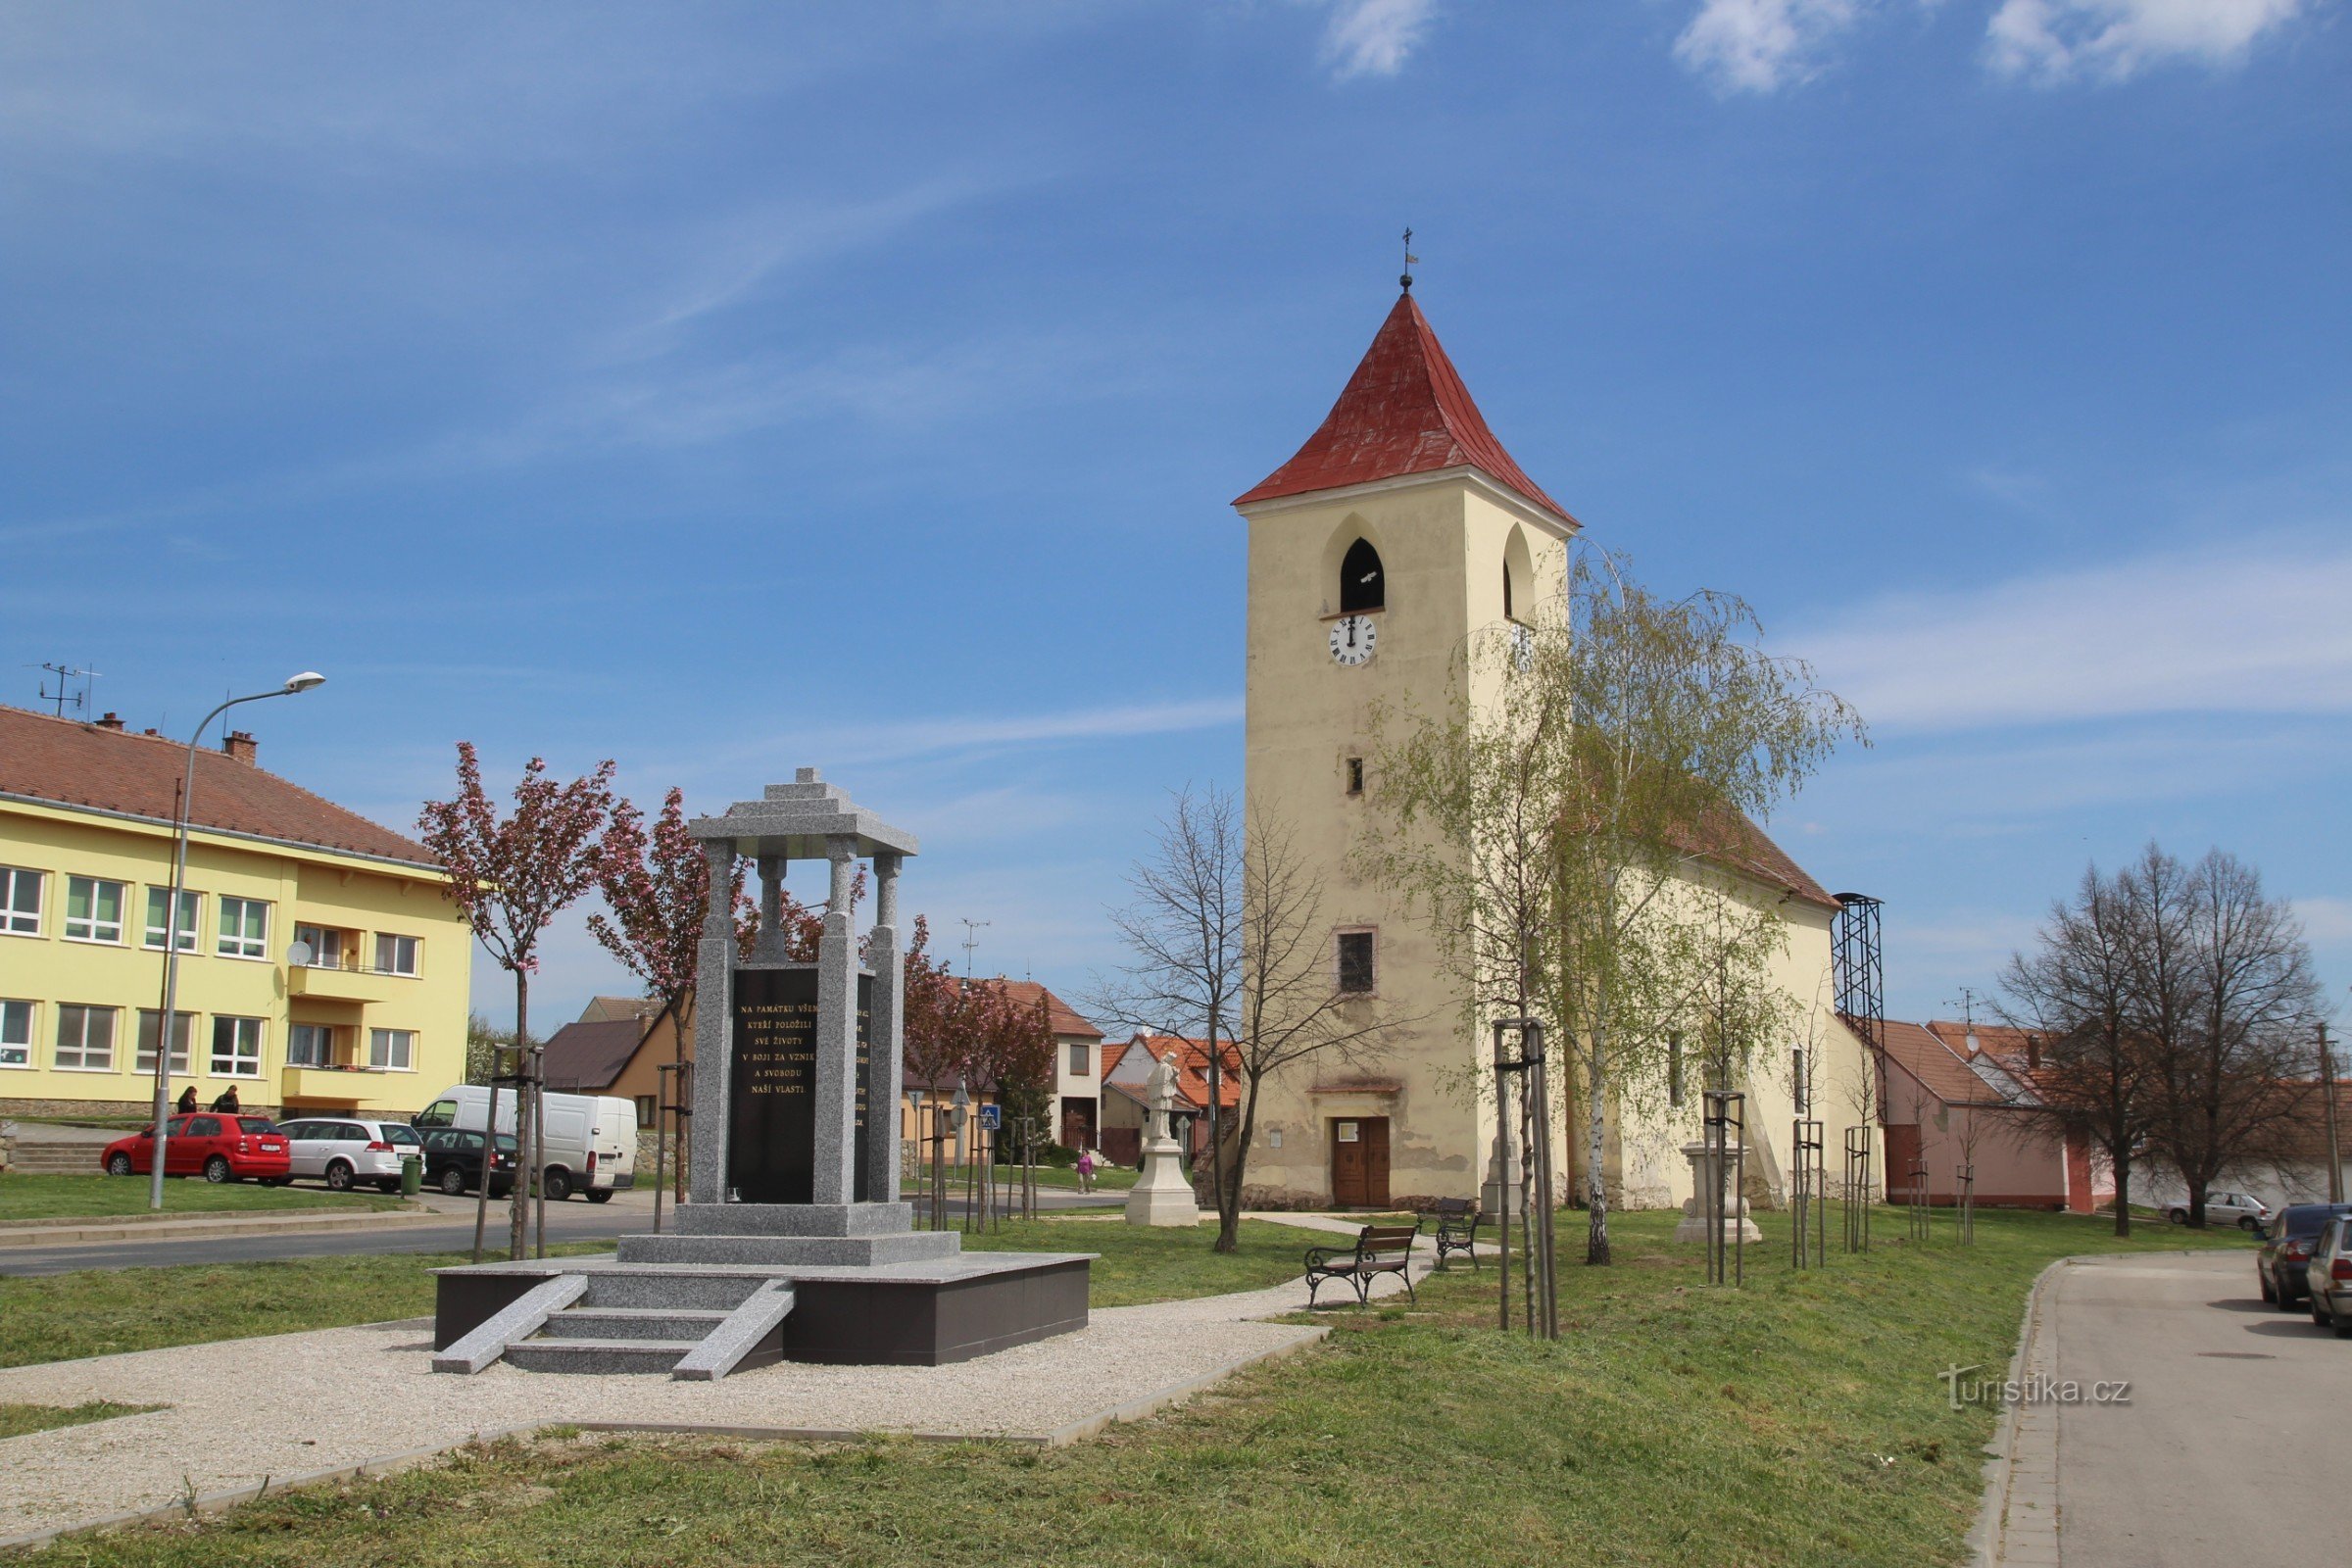 Semiremorcă Sedlecká cu biserica Sf. Bine ati venit